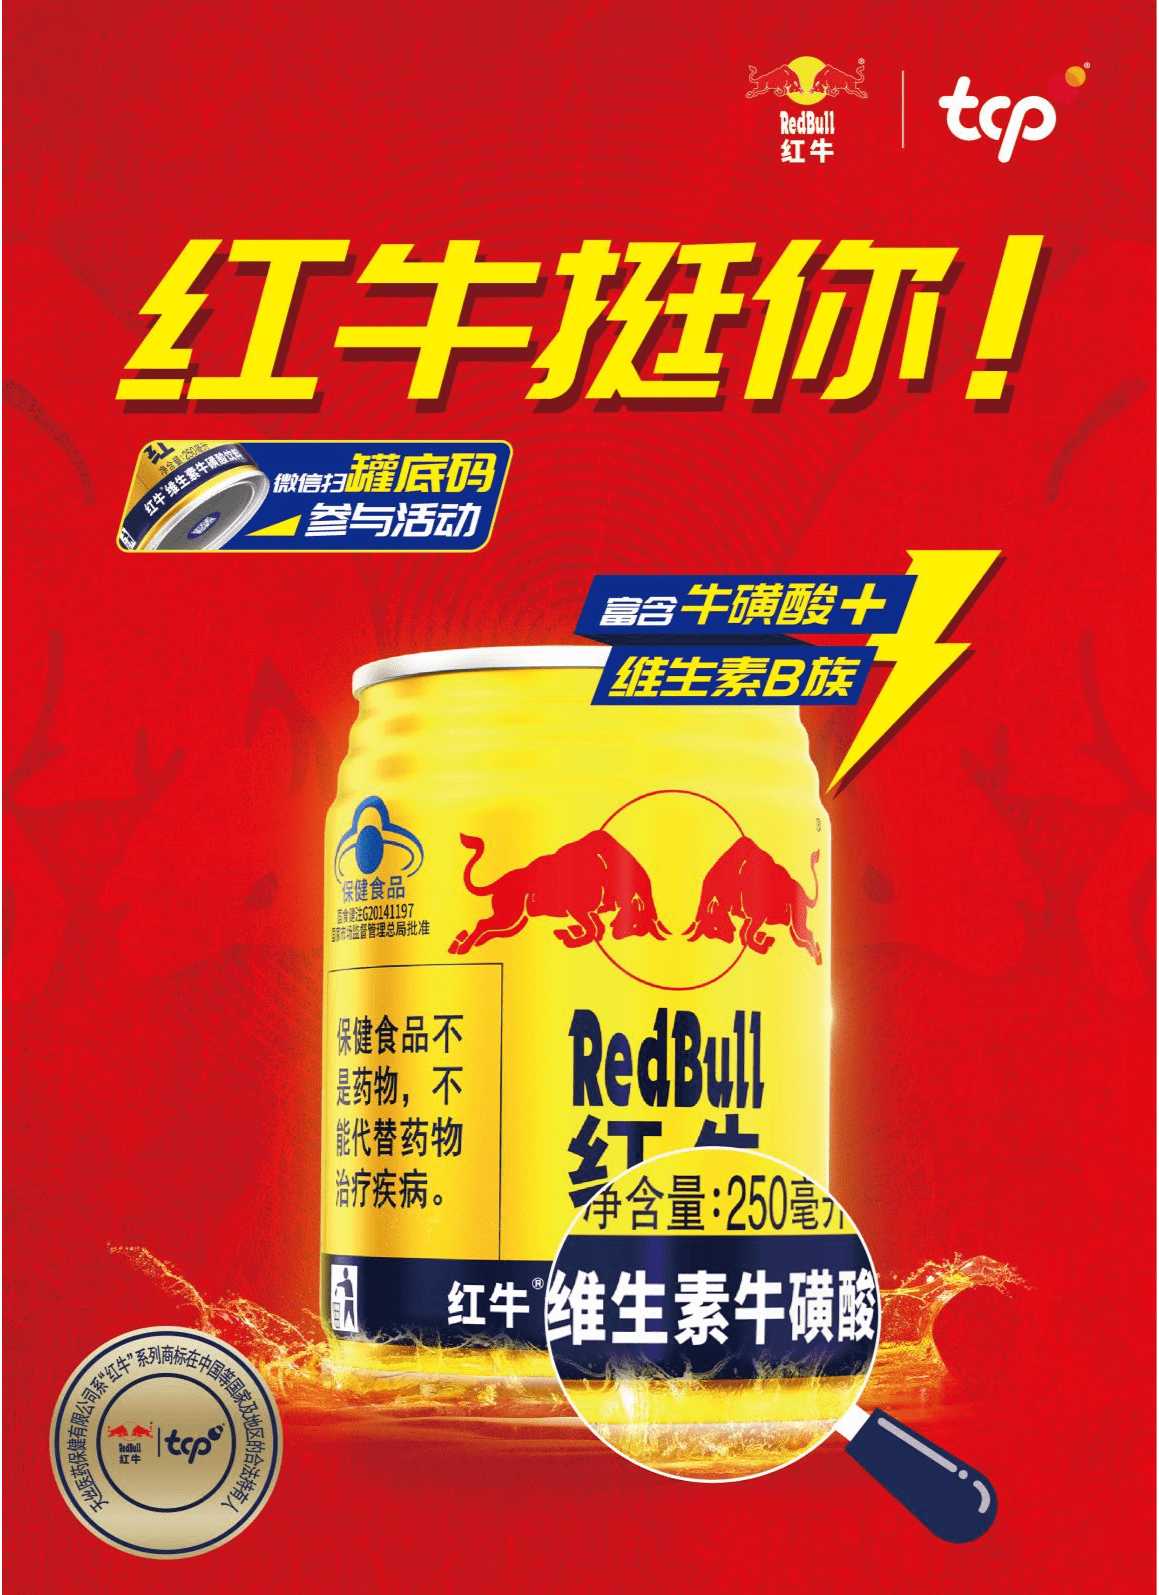 红牛维生素牛磺酸饮料产品海报图 (央广网发 品牌方供图)